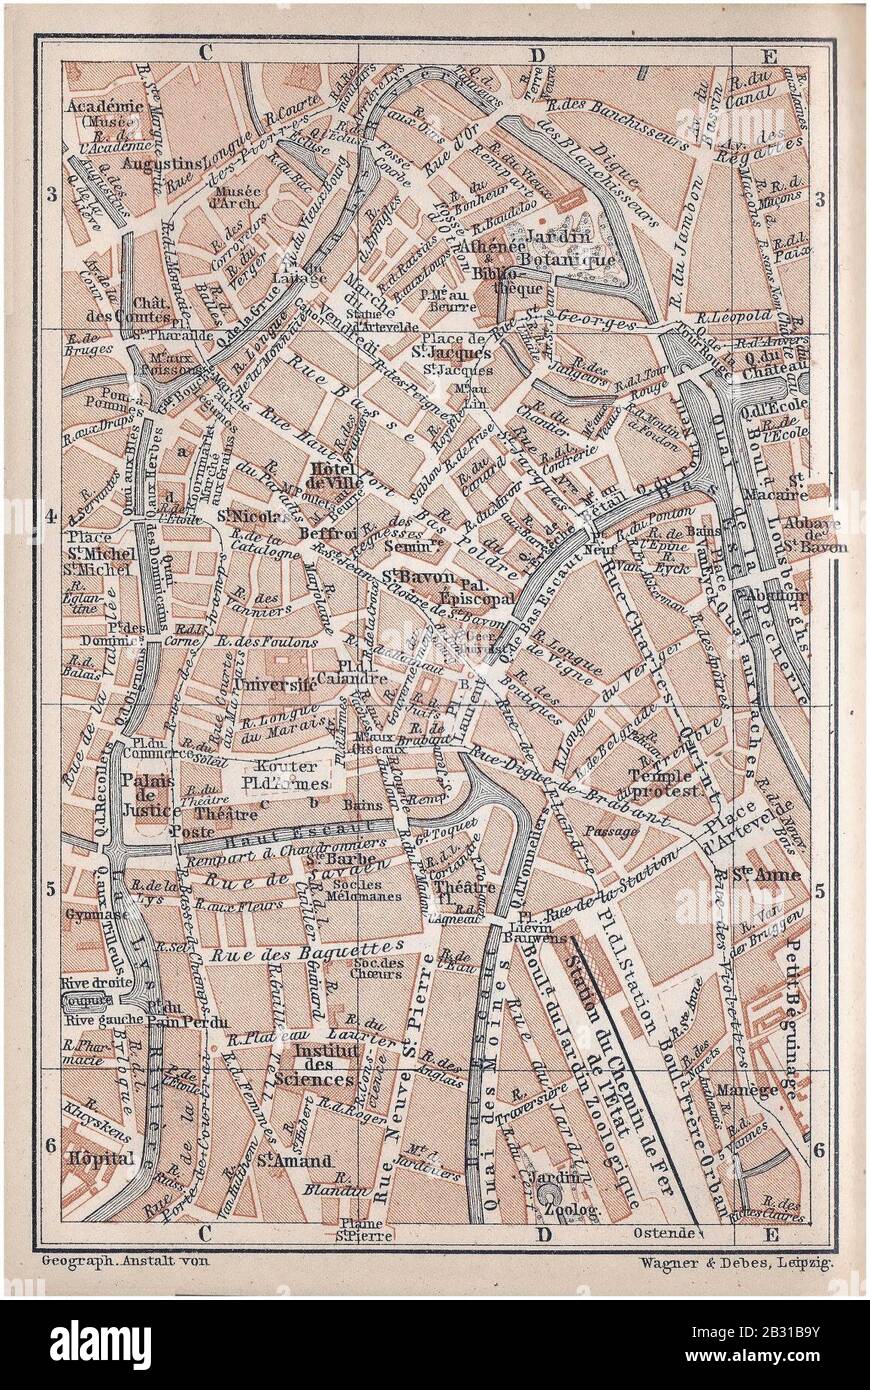 Gent -centrum- (Vlaams Gewest, Provincie Oost-Vlaanderen) - Kaart uit de gids ‘Baedeker België en Holland‘, Franse editie van 1897. Stock Photo